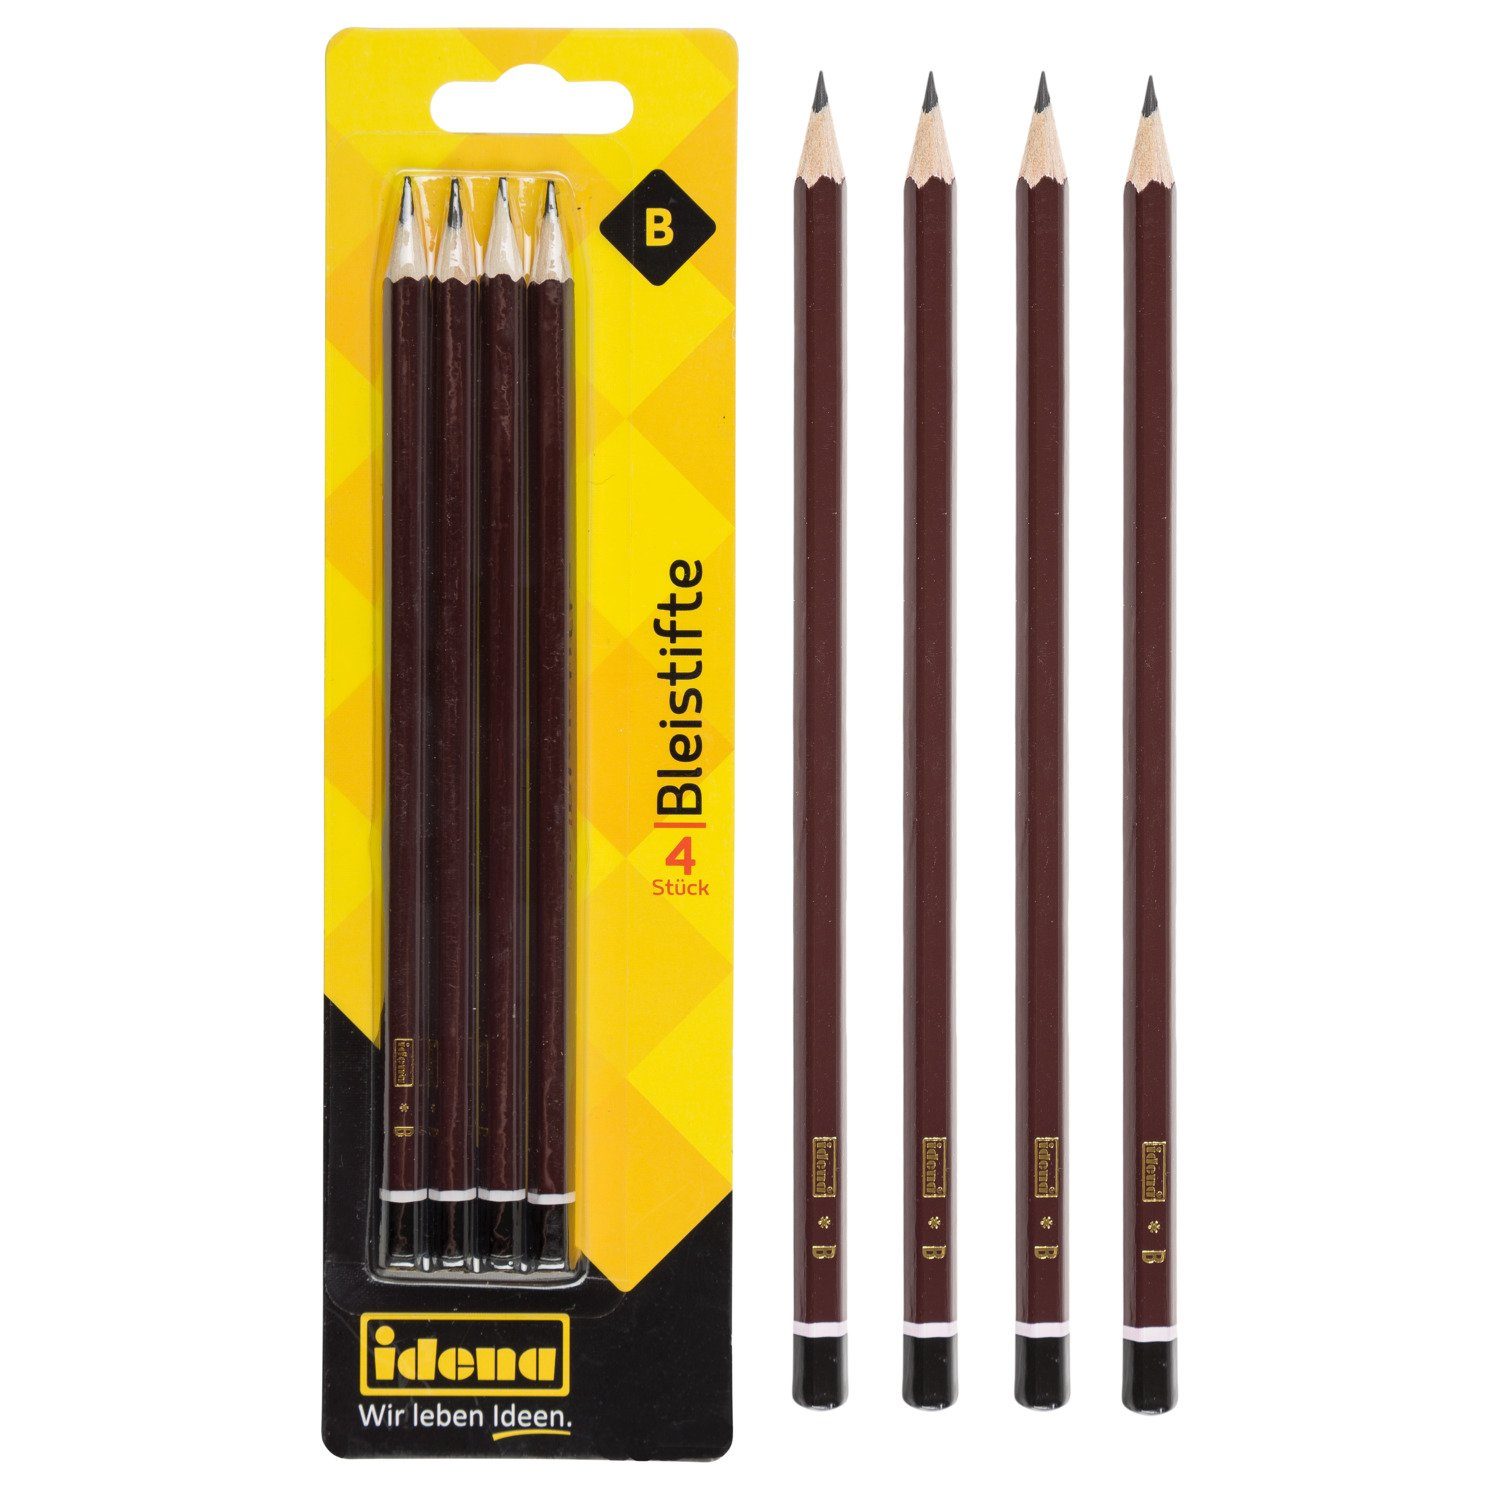 Idena Bleistift Idena 20005 - Bleistift, 4 Stück, Härte B